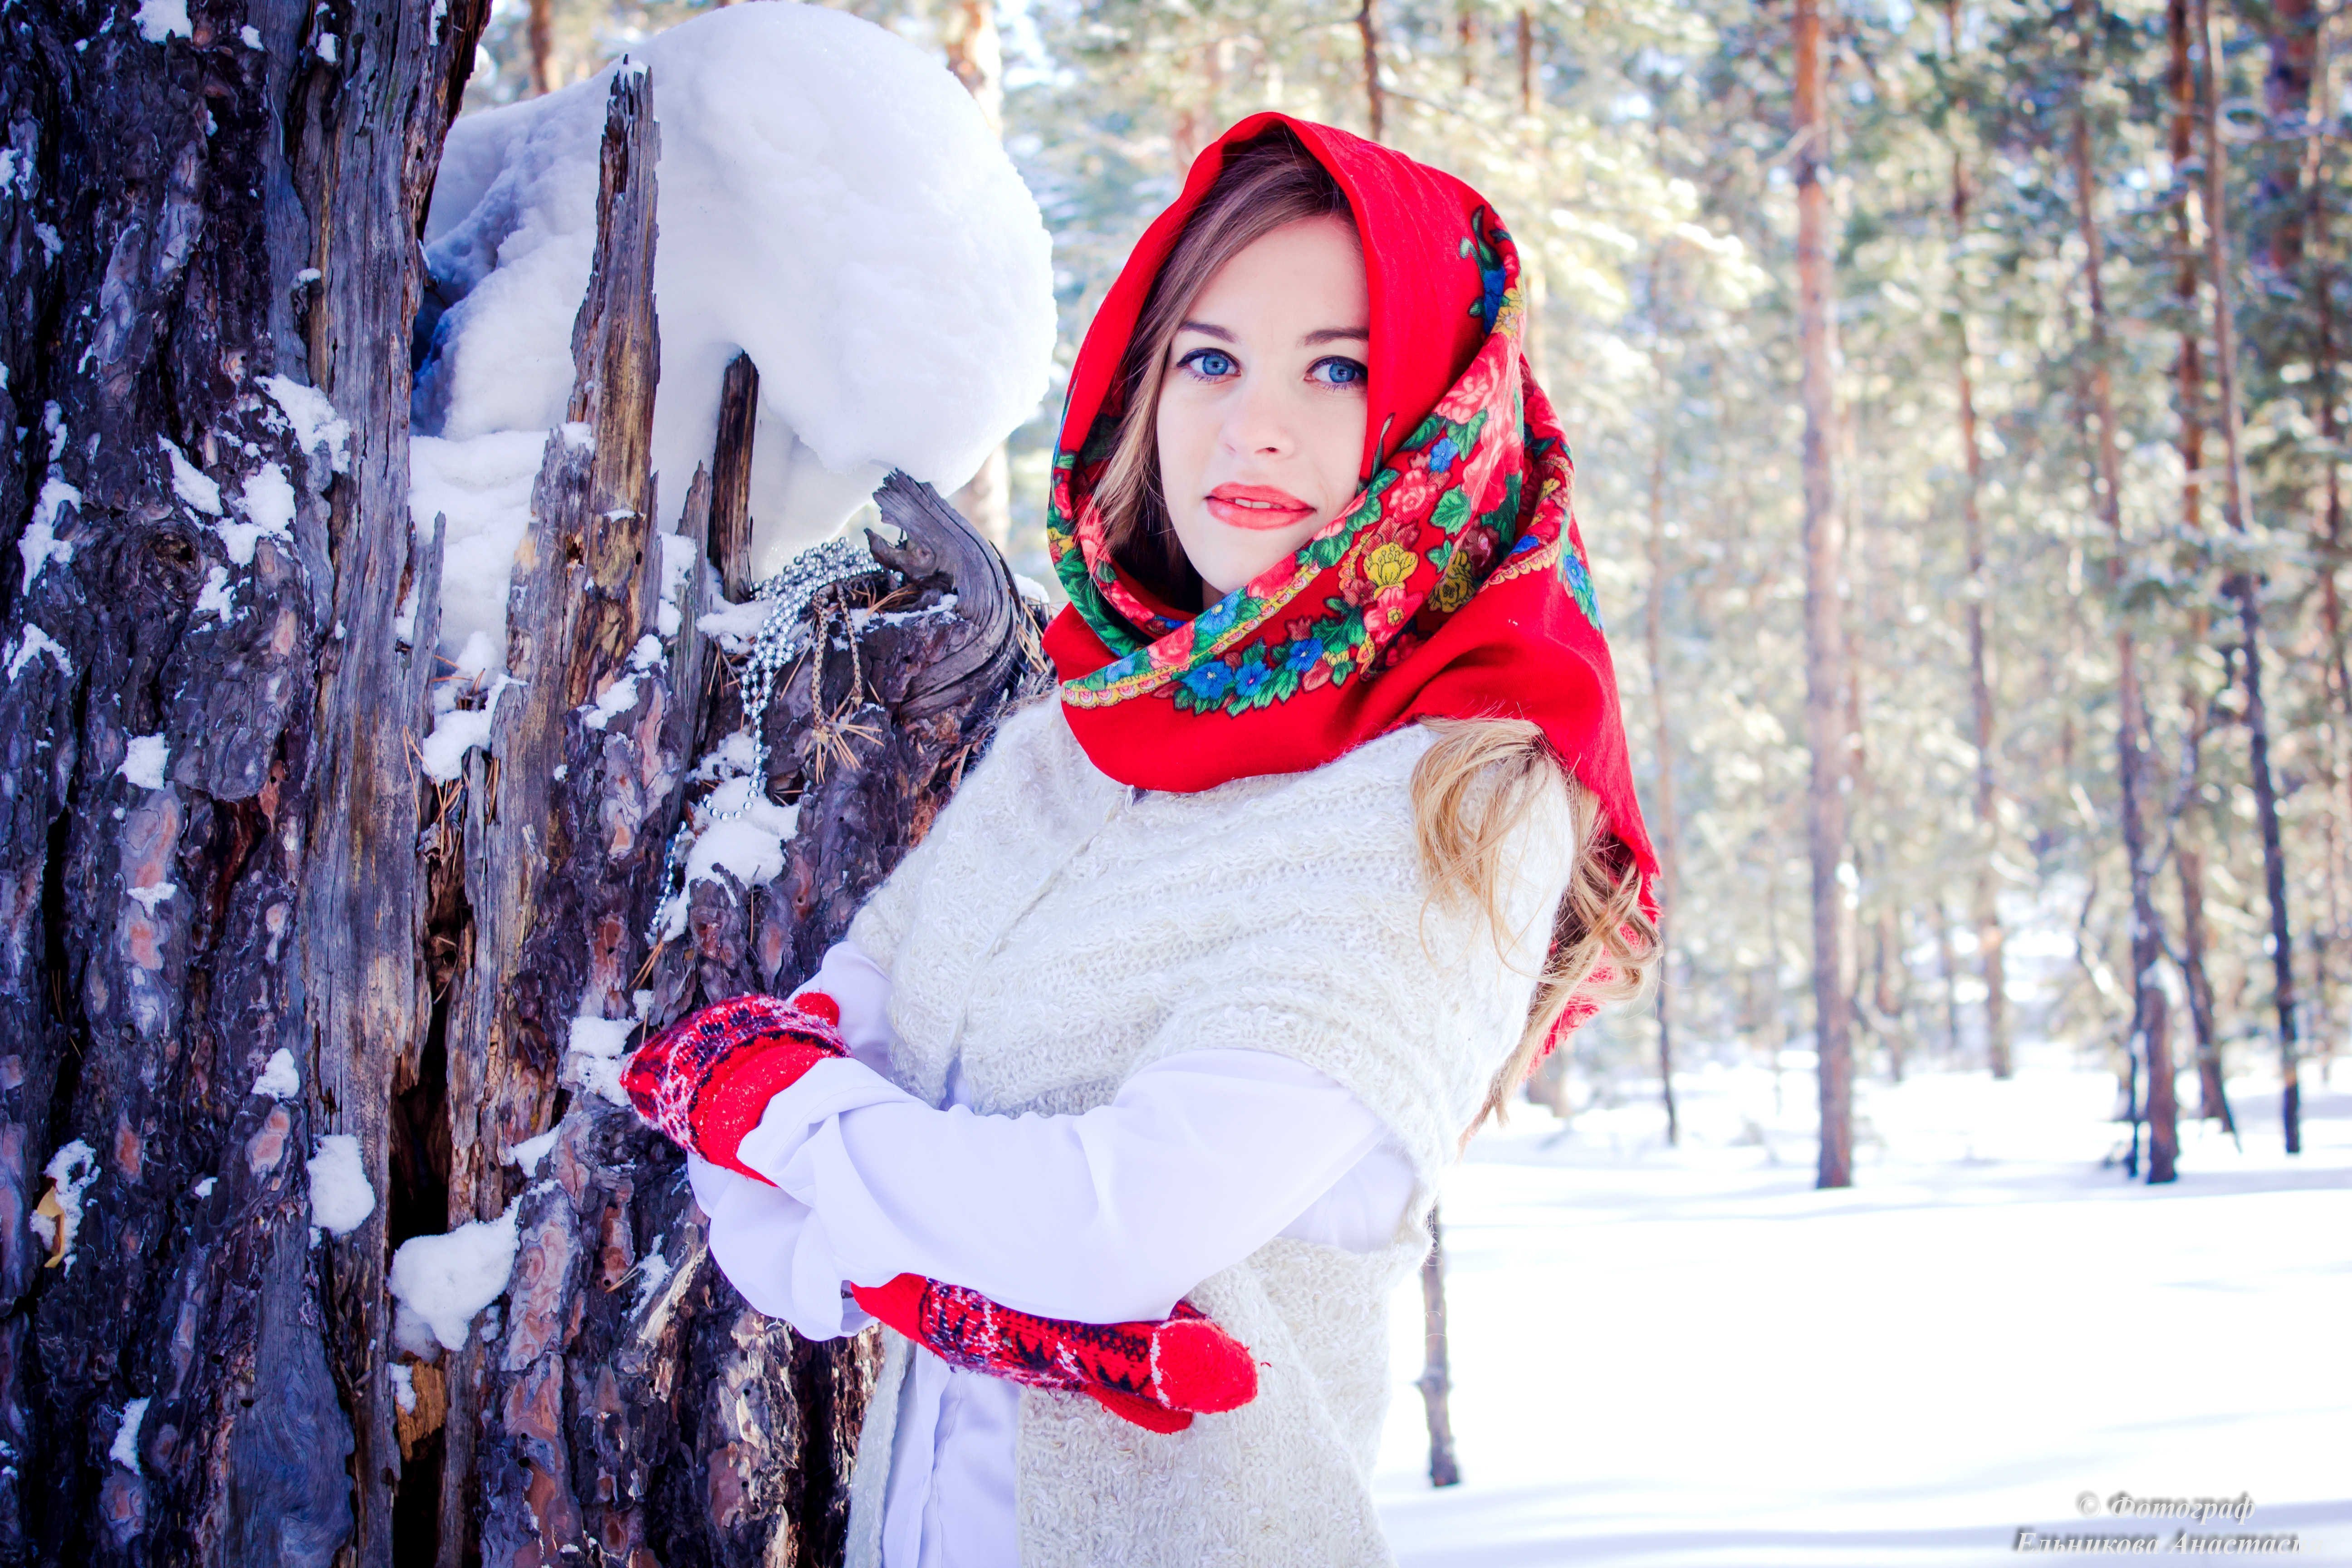 Стоковые фотографии по запросу Девушка зима лес